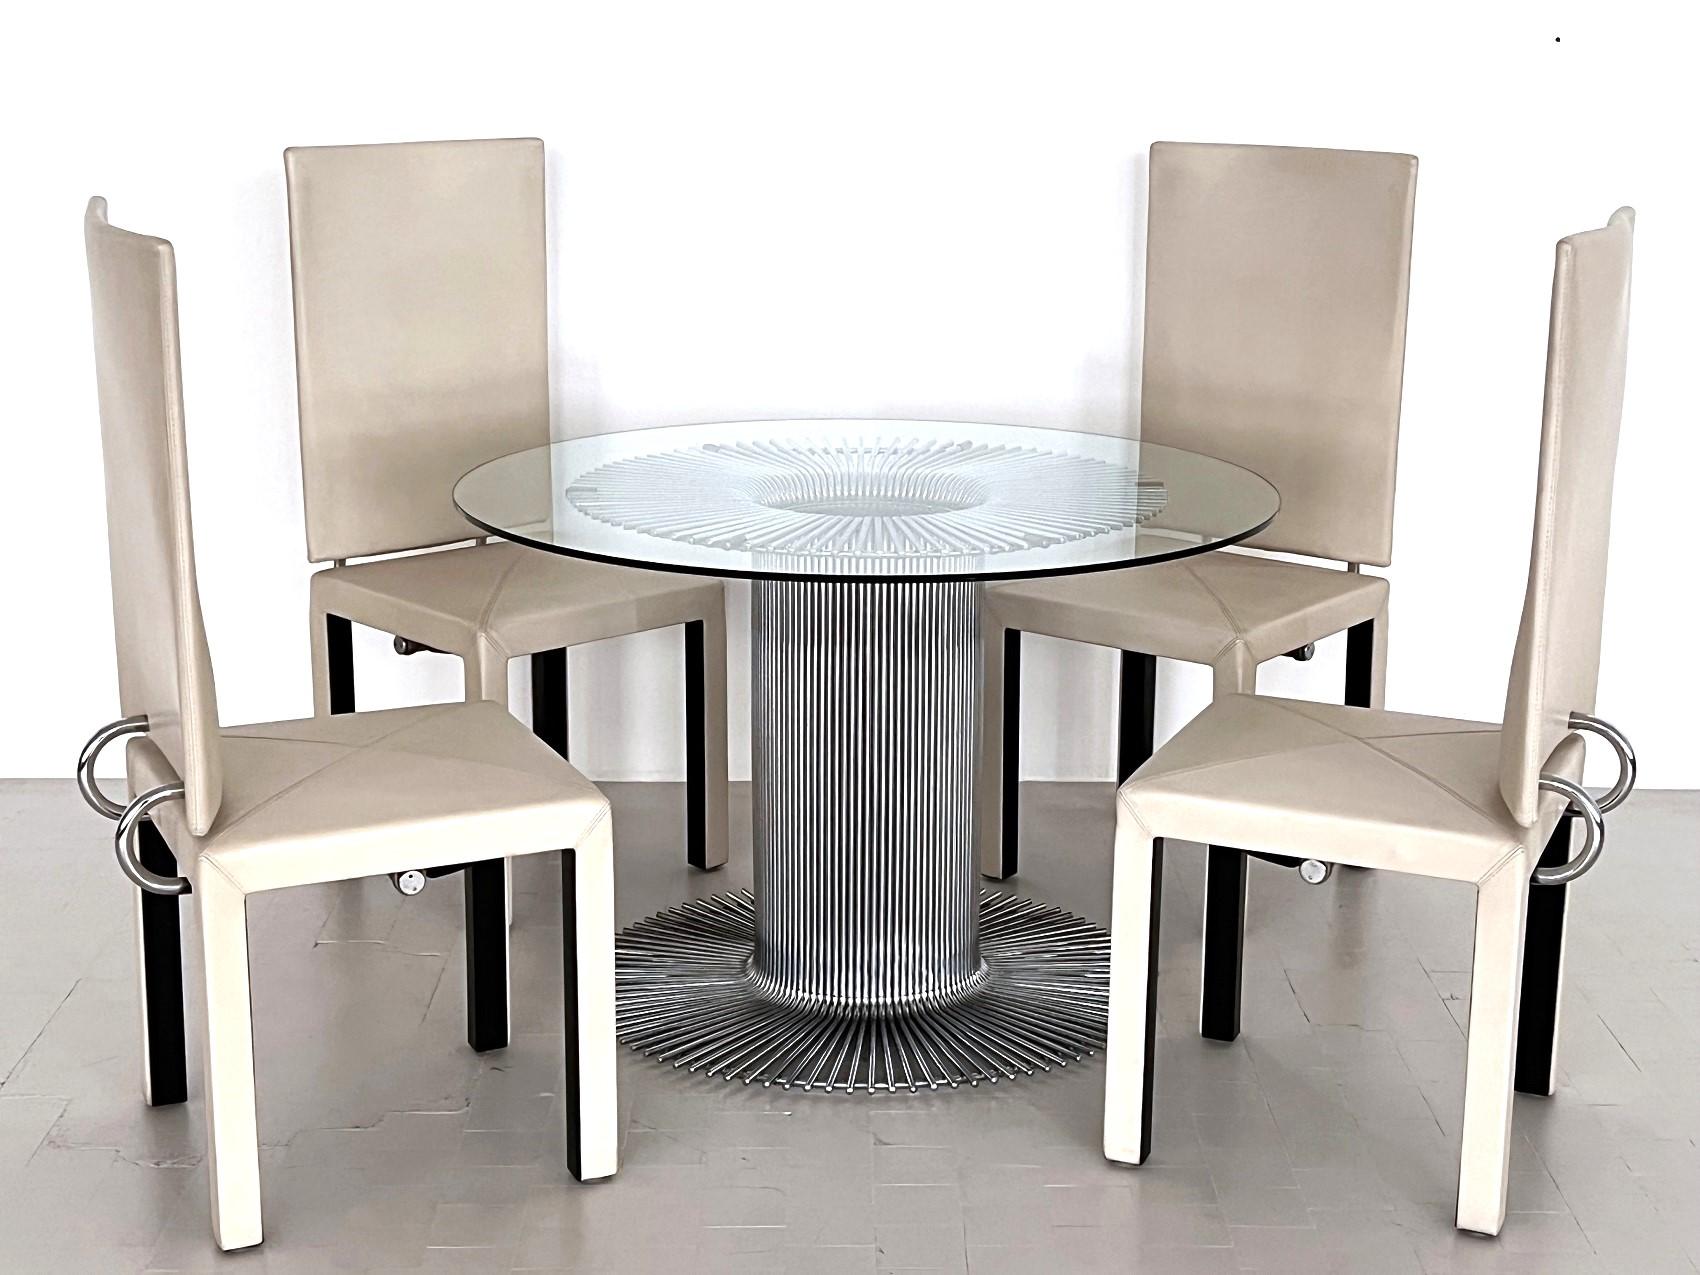 Belle table de salle à manger ronde en métal chromé avec plateau en verre
Fabriqué en Italie,  ca. 1960s

Table de salle à manger à piédestal avec une base tubulaire sculpturale en chrome et un plateau en verre transparent. 
Conçu et fabriqué en